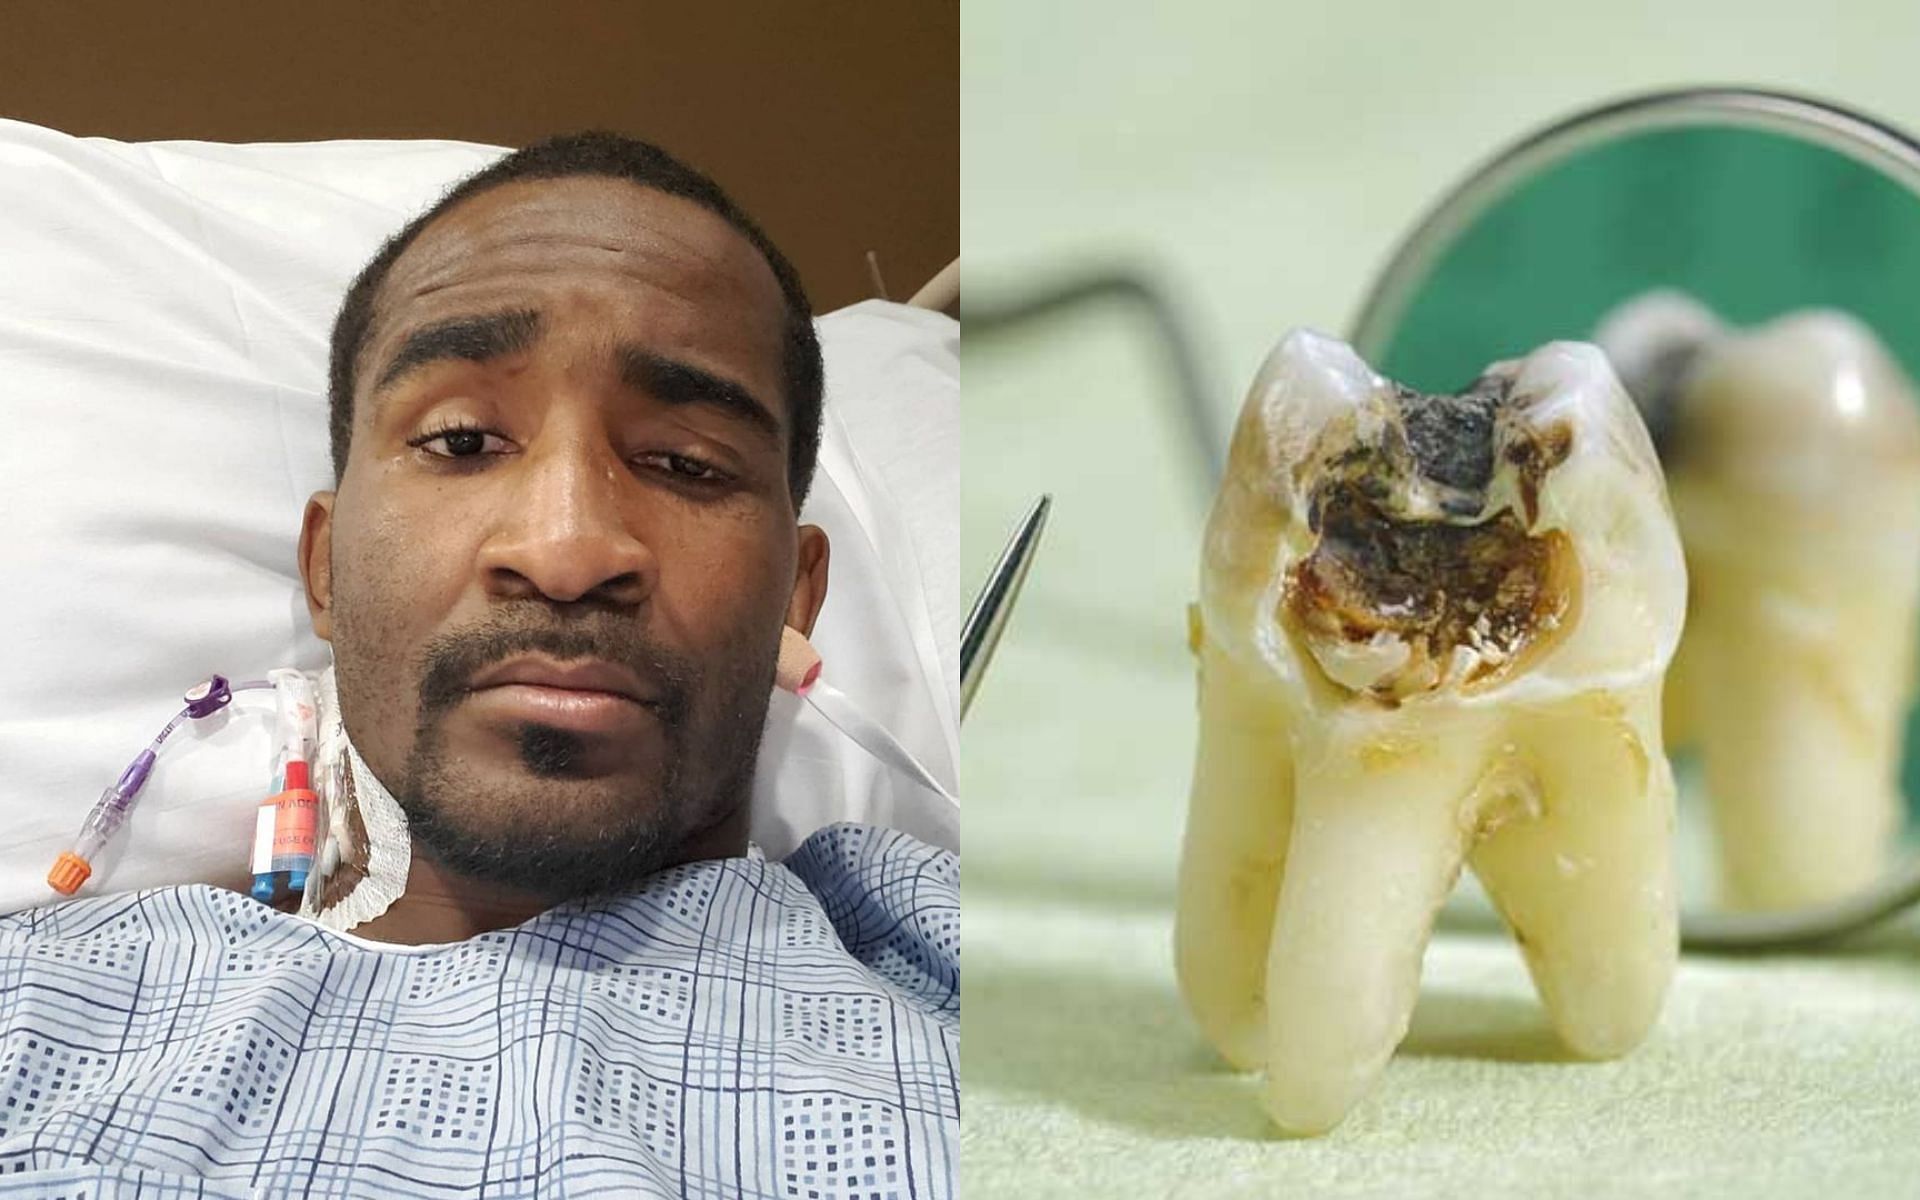 Geoff Neal (L) (via @handzofsteelmma on Instagram), Bad tooth (R) (via @thompsoncreekdental.com)